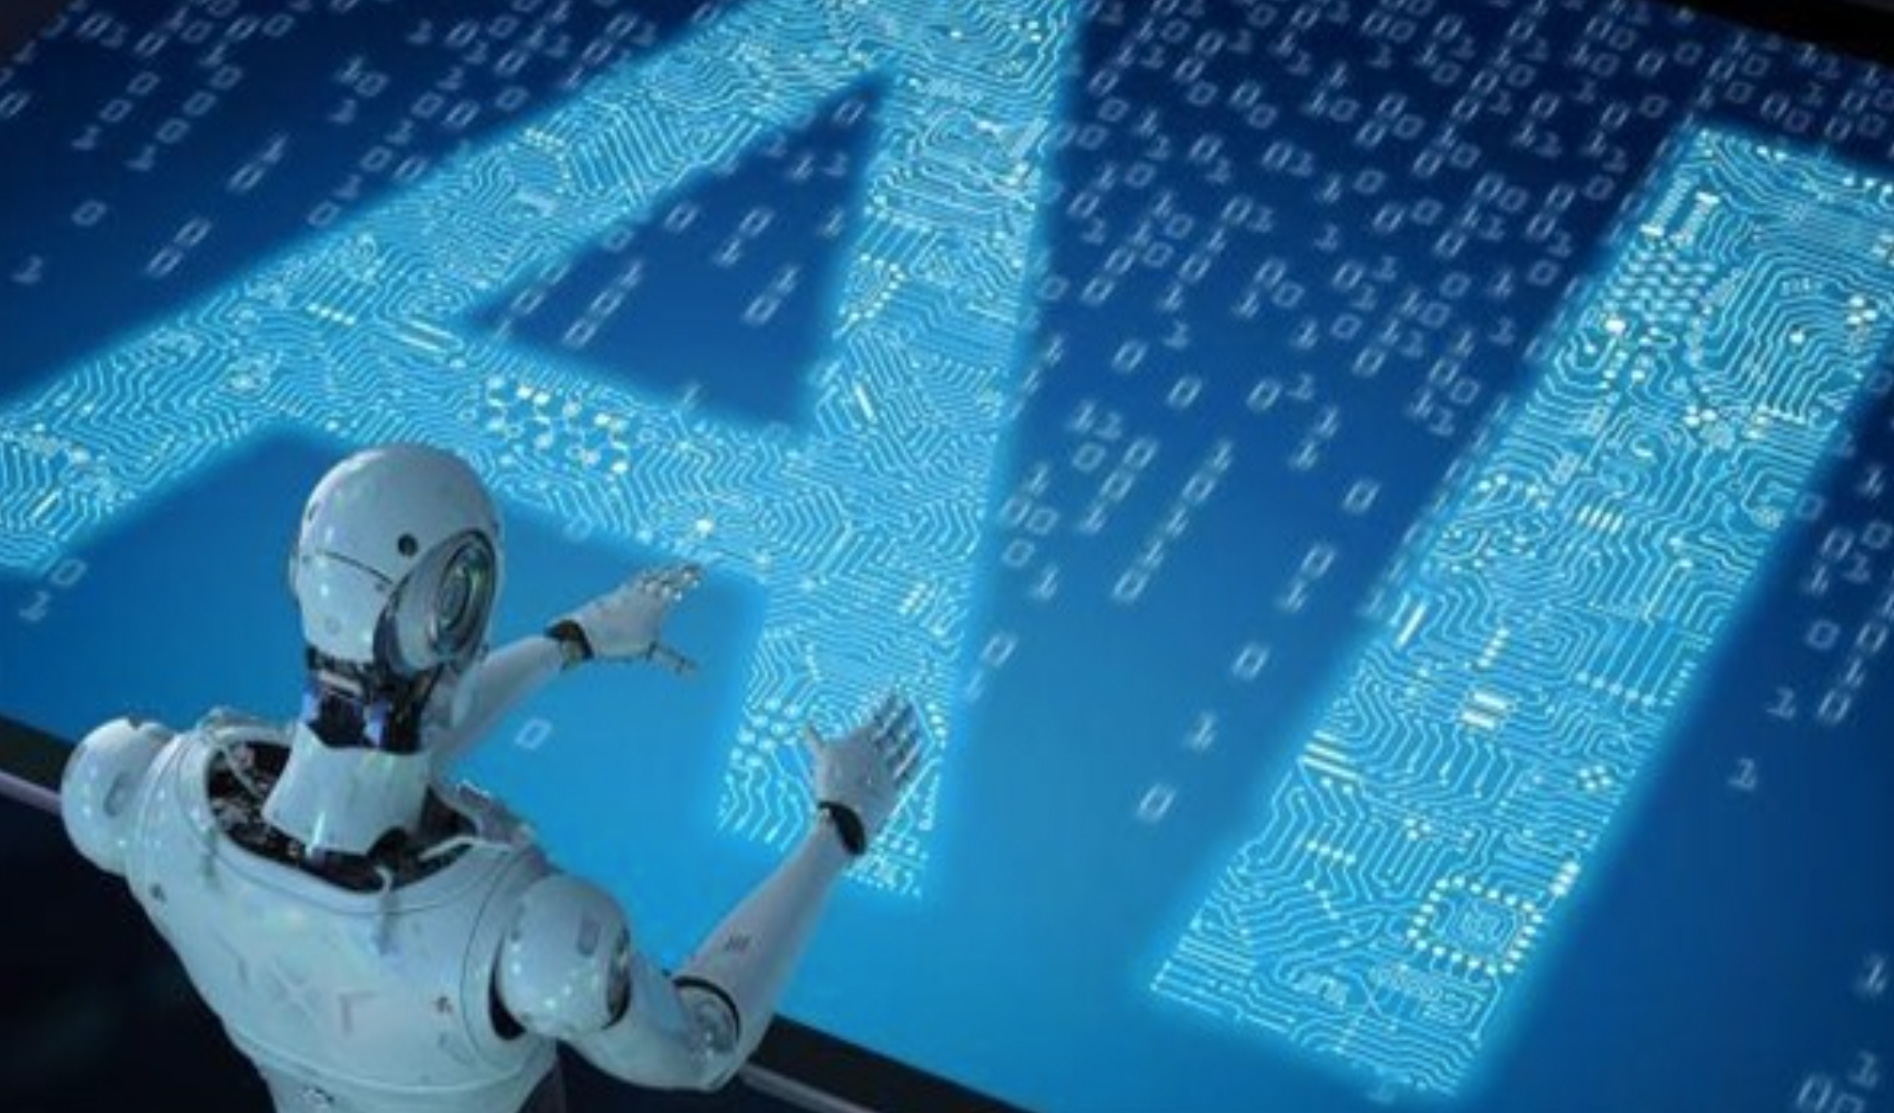 Hội nghị quốc tế về tương lai AI tập trung vào công nghệ tạo sinh